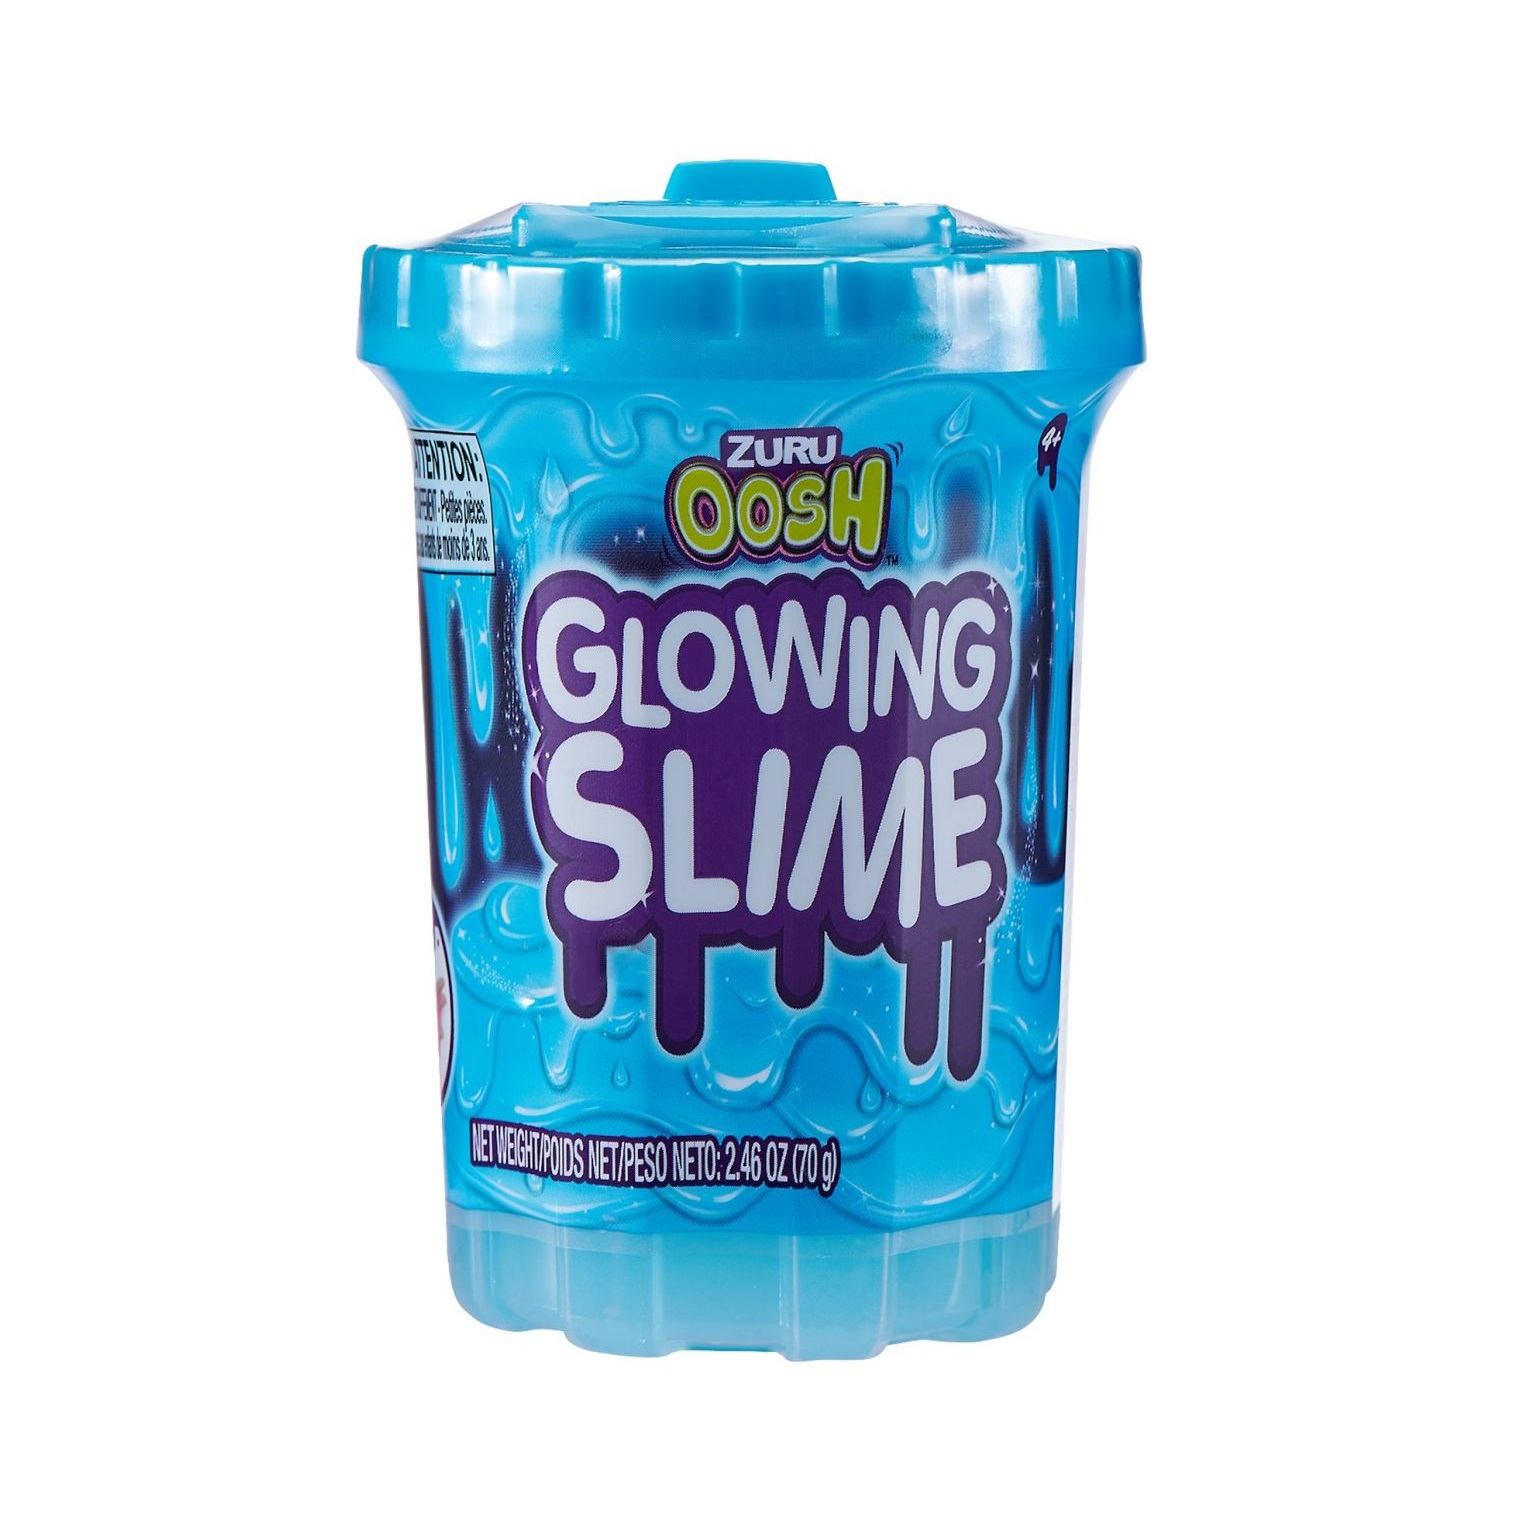 Glowing slime